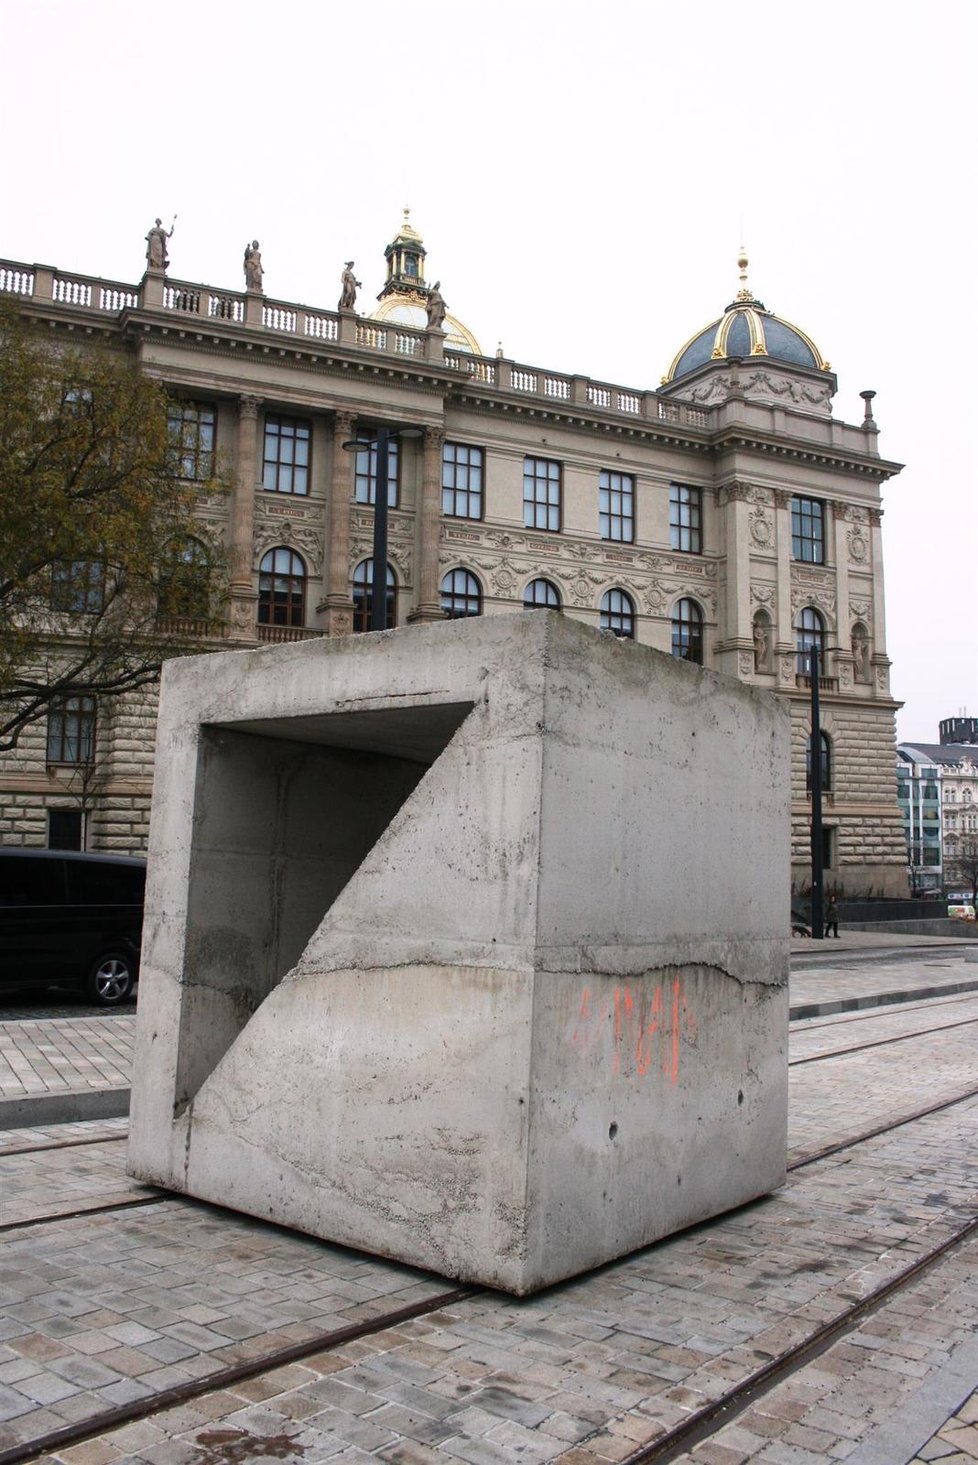 U Národního muzea se objevila socha Martina Zeta nazvaná Tvárnice. 35 tun vážicí umělecké dílo budí u veřejnosti rozpaky. Mezi budovami bývalého Federálního shromáždění a Národního muzea by mělo zůstat dva roky.